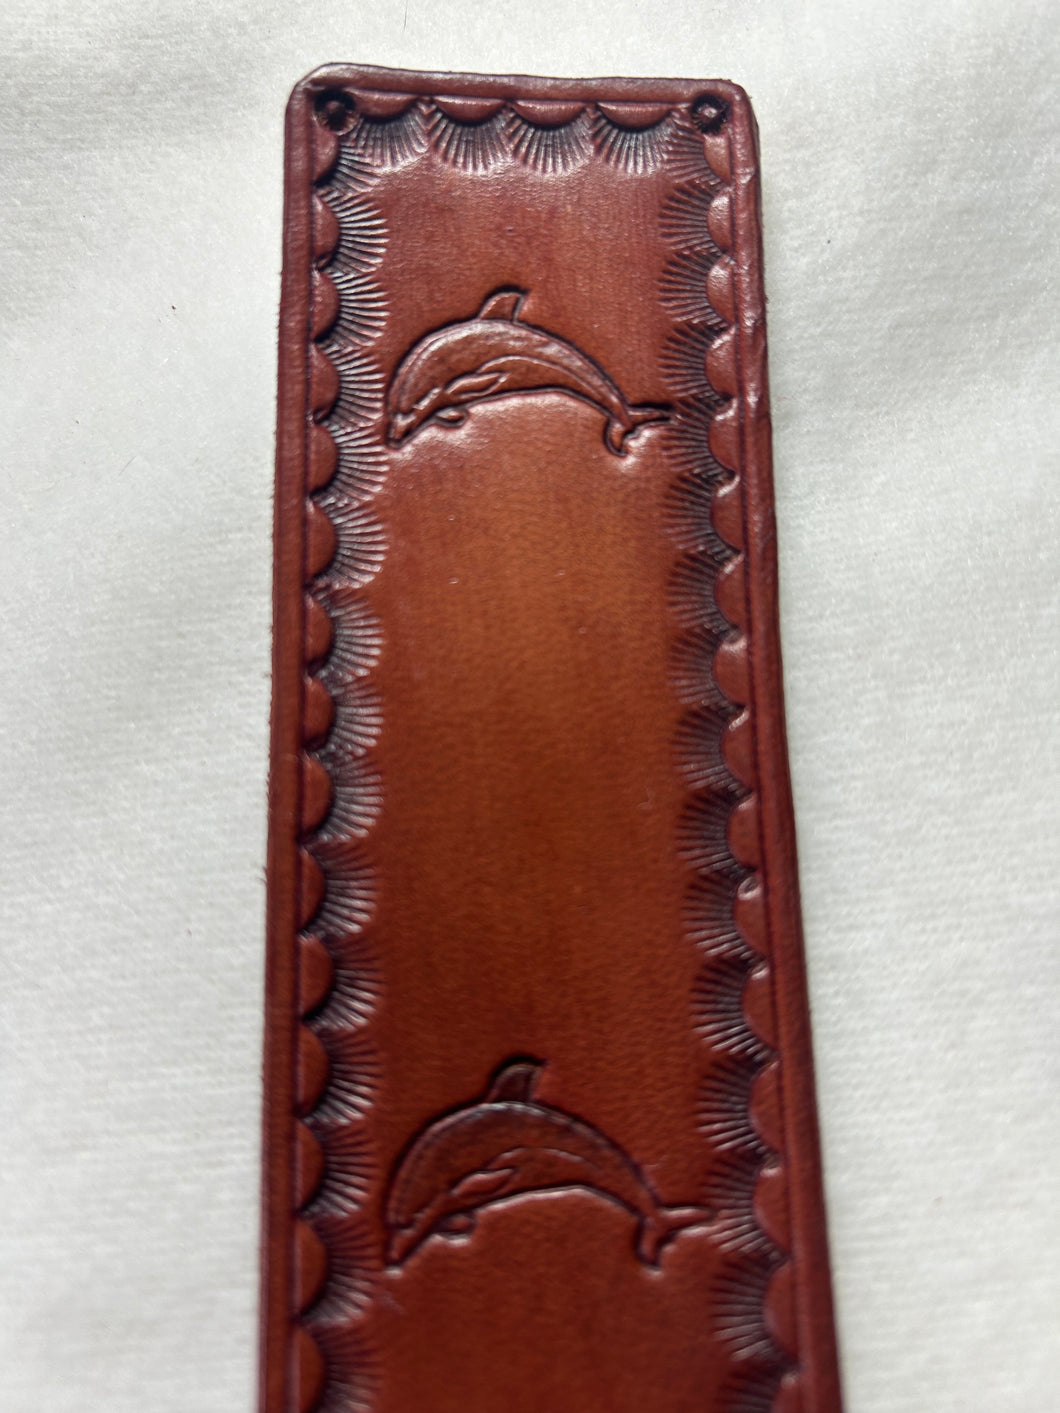 Leather Bookmark Dolphin Fish  eyelash border Handmade Free UK Postage